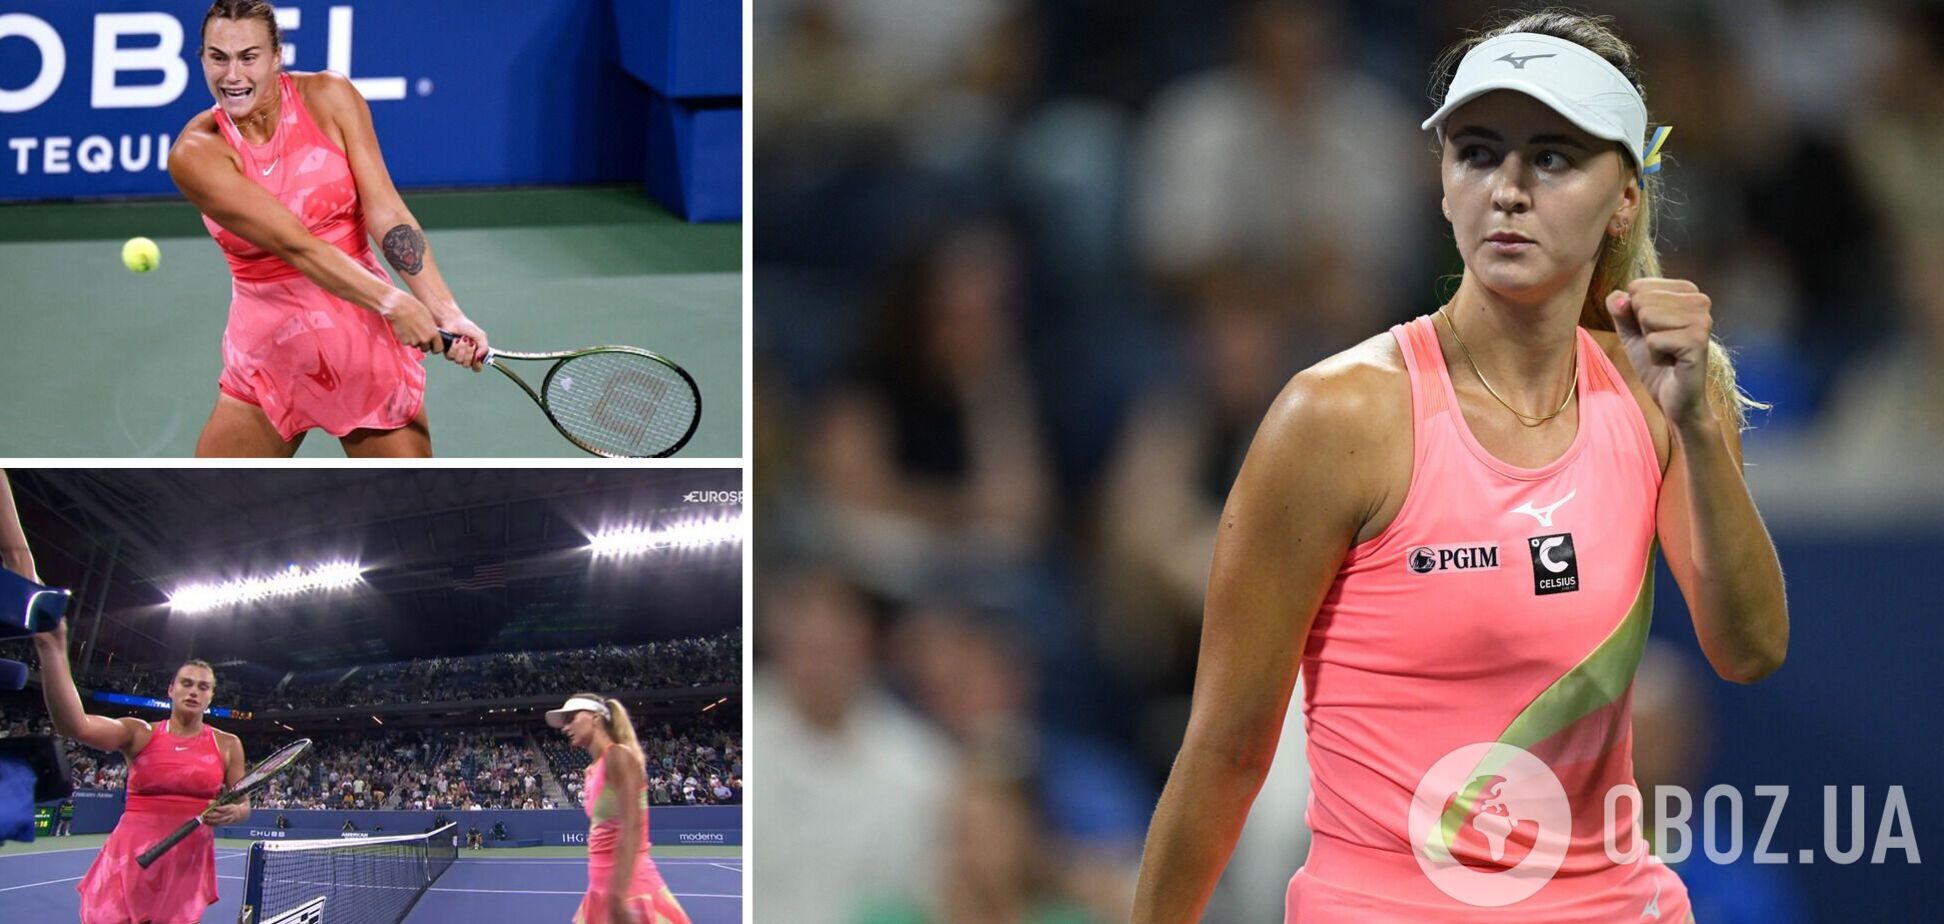 Бельгийская теннисистка отказалась пожимать руку 1-й ракетке Беларуси на US Open и завершила карьеру. Видео